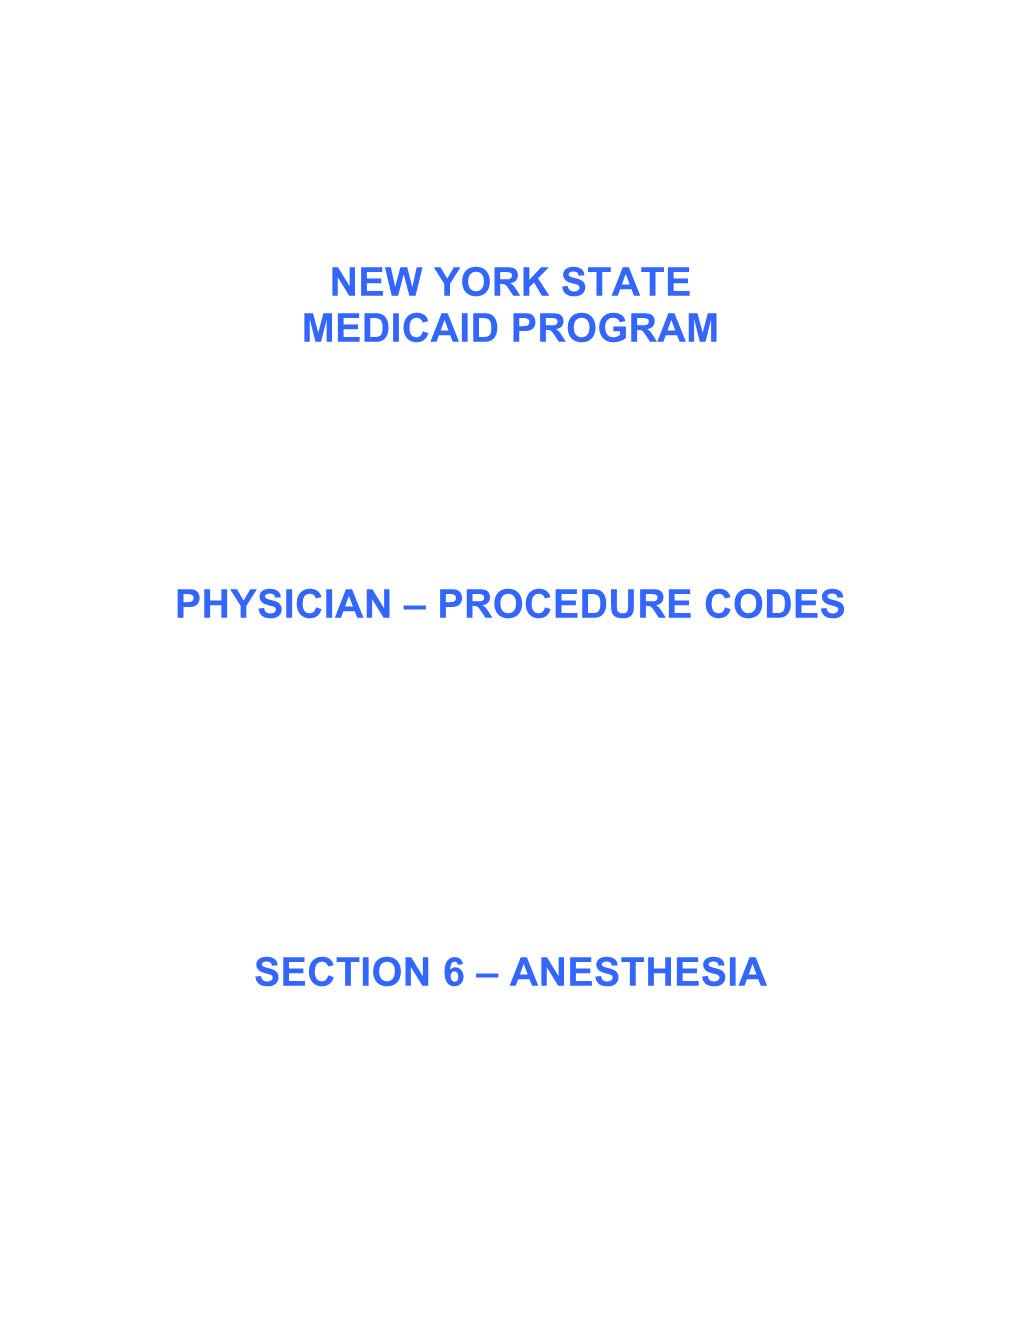 Procedure Codes